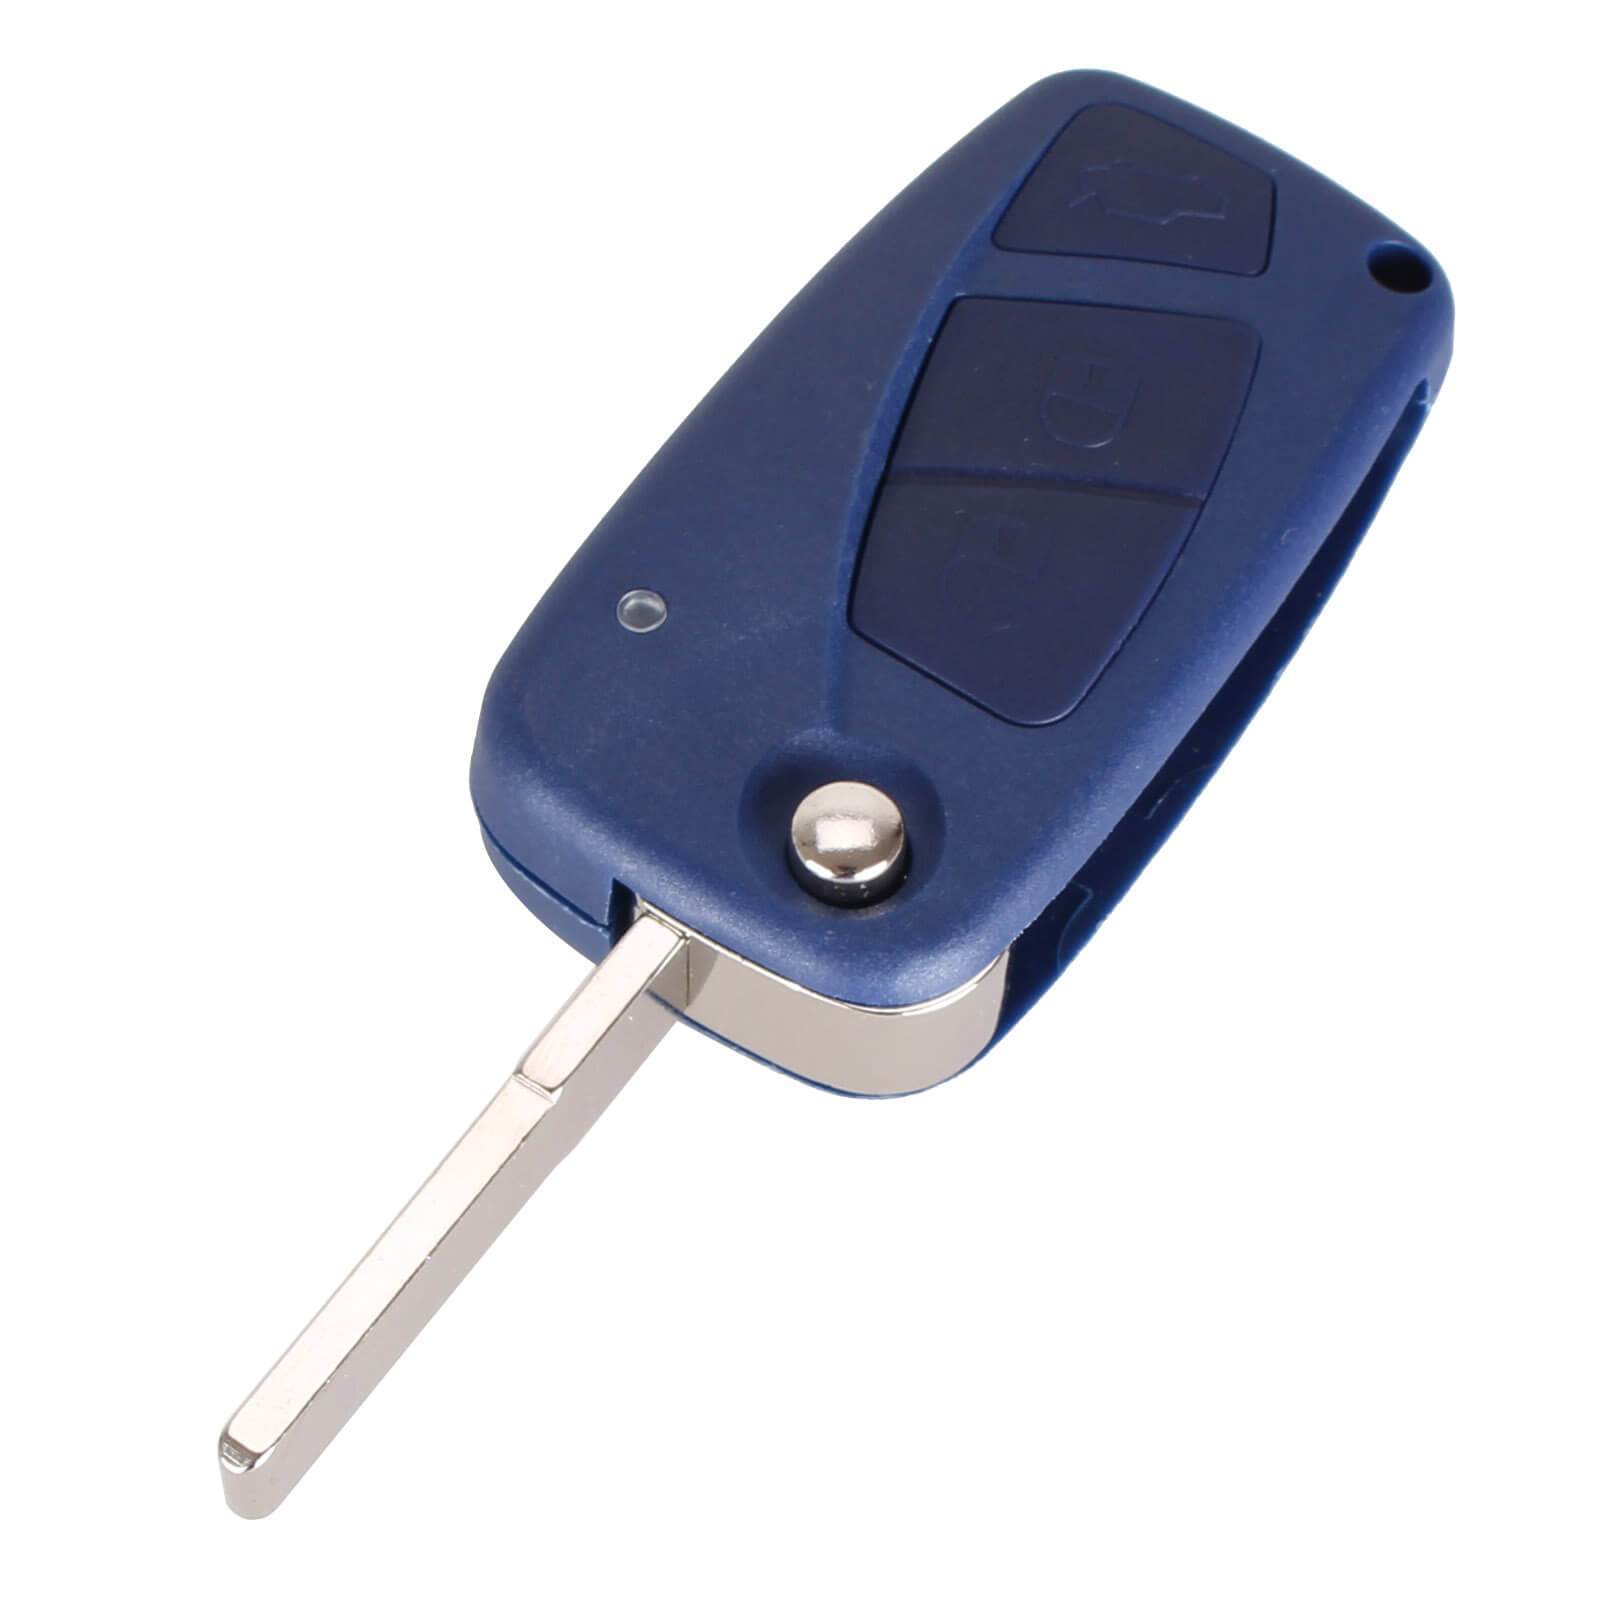 Kék színű, 3 gombos Citroen kulcsház, bicskakulcs nyers kulcsszárral.